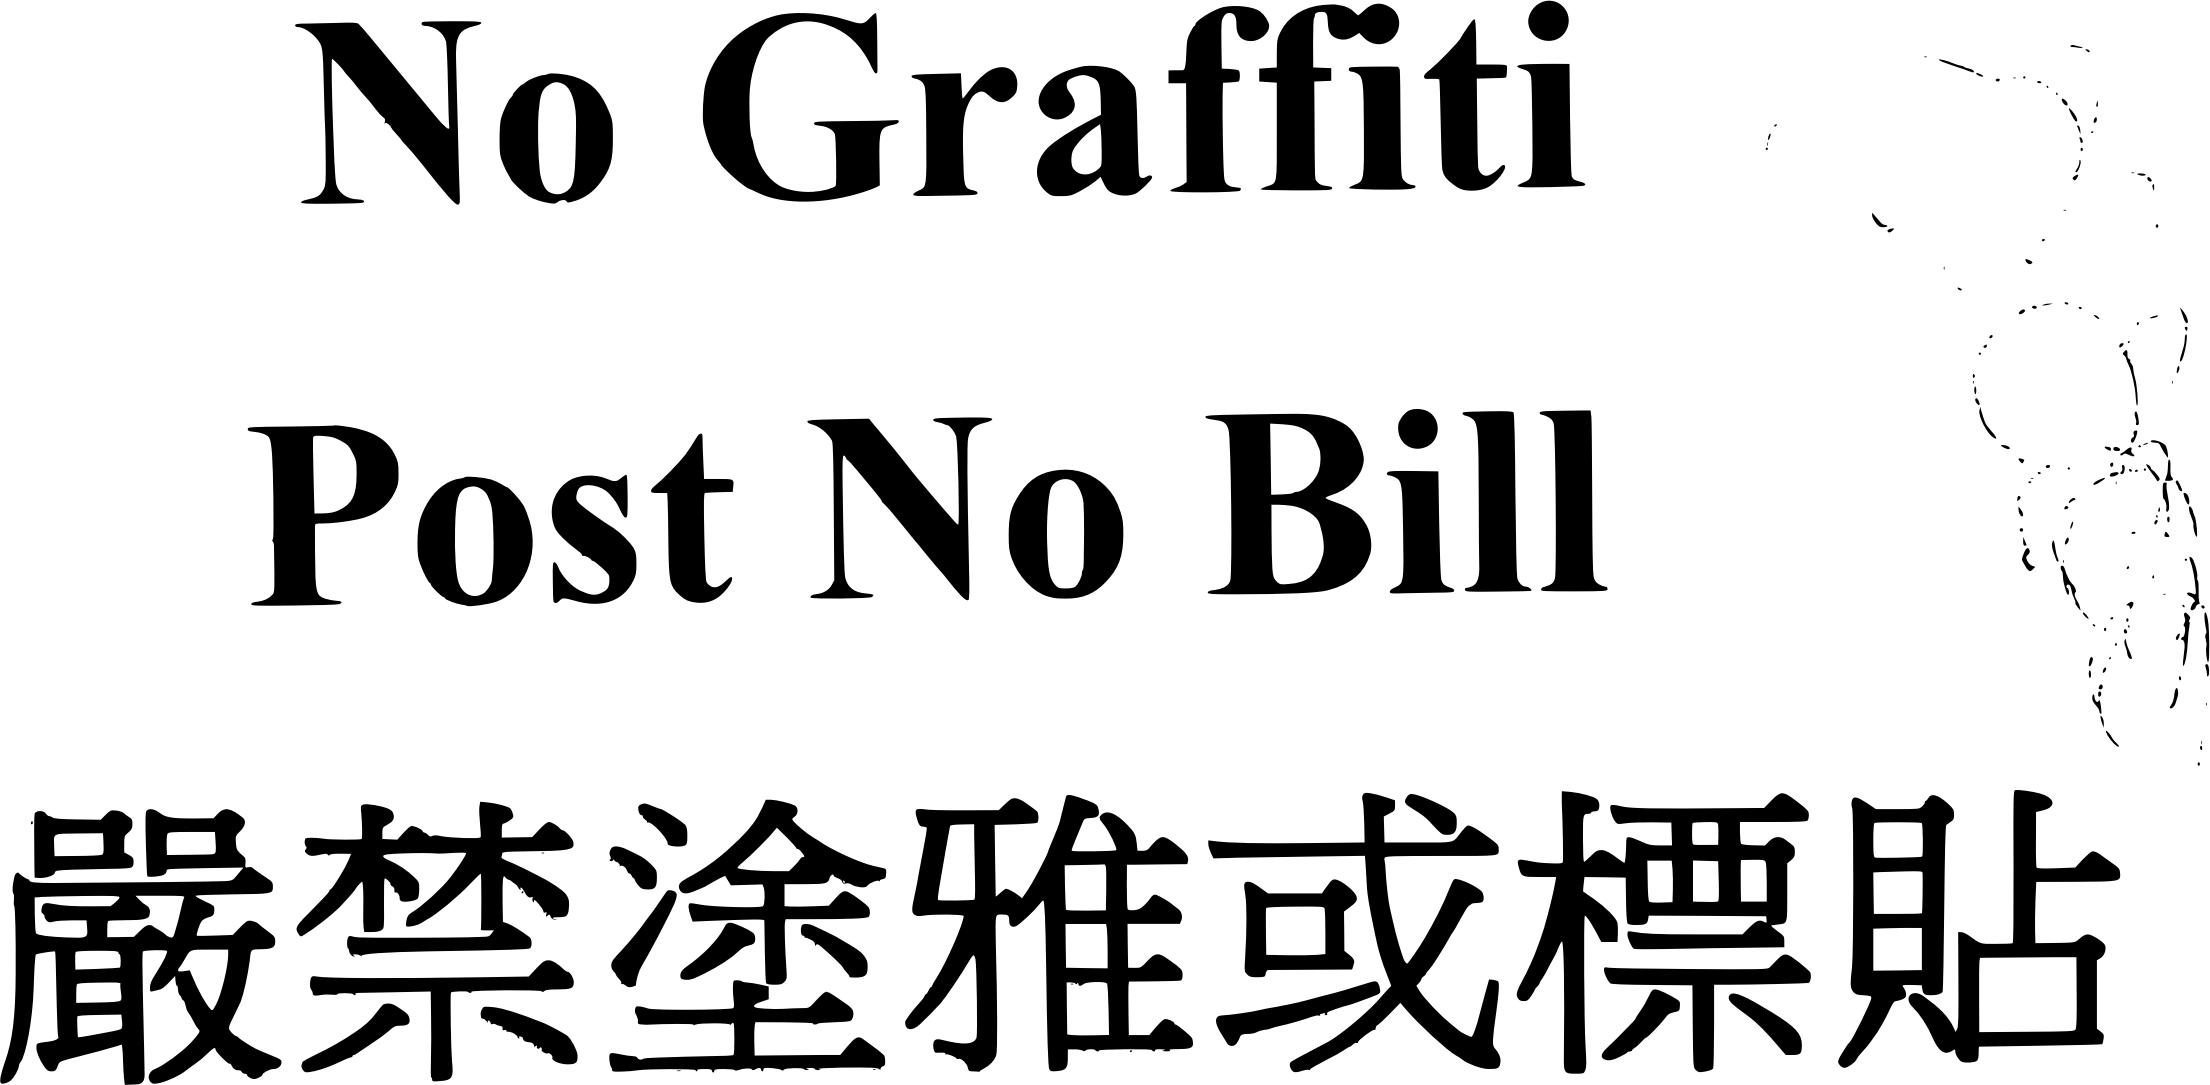 Post no graffiti,post no bills. Traditional Chinese png